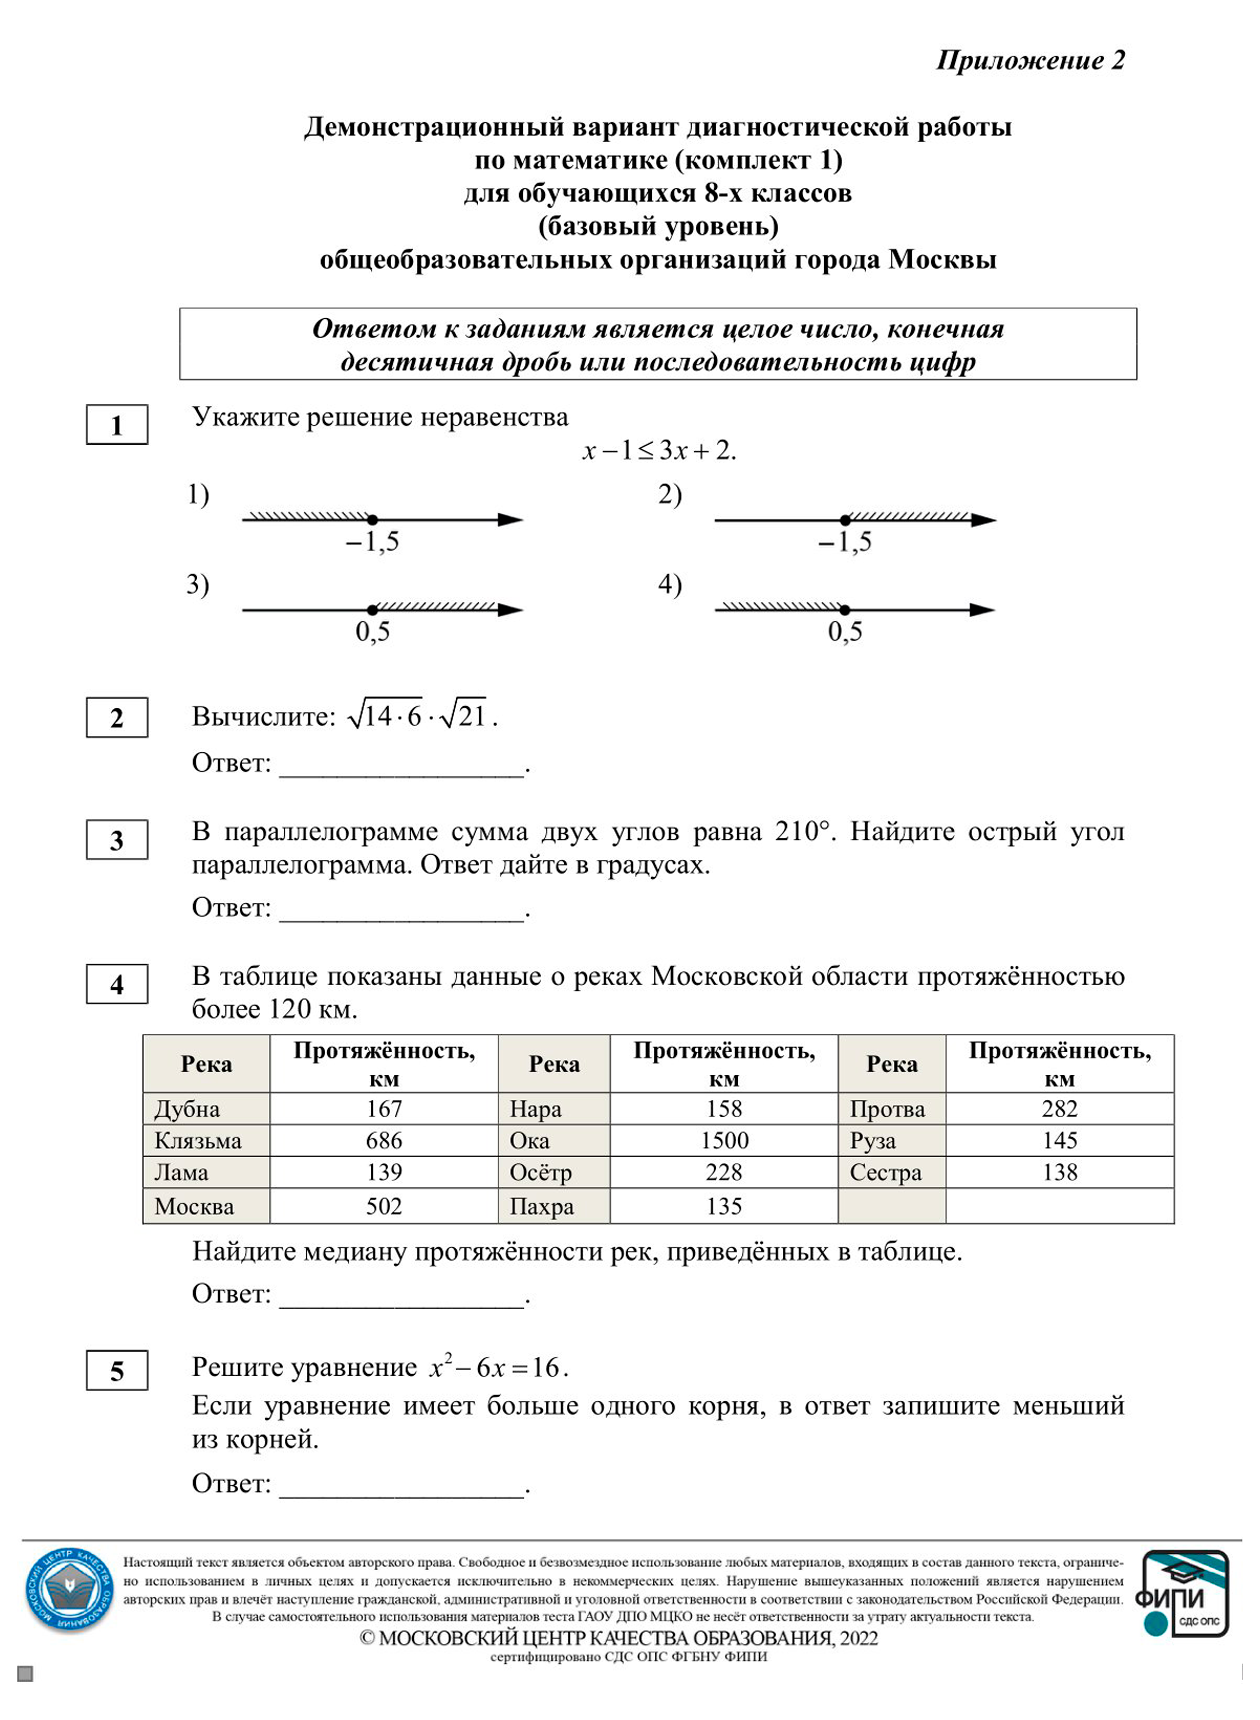 Демонстрационный вариант проверочной работы МЦКО по математике для восьмиклассников. Источник: mcko.ru